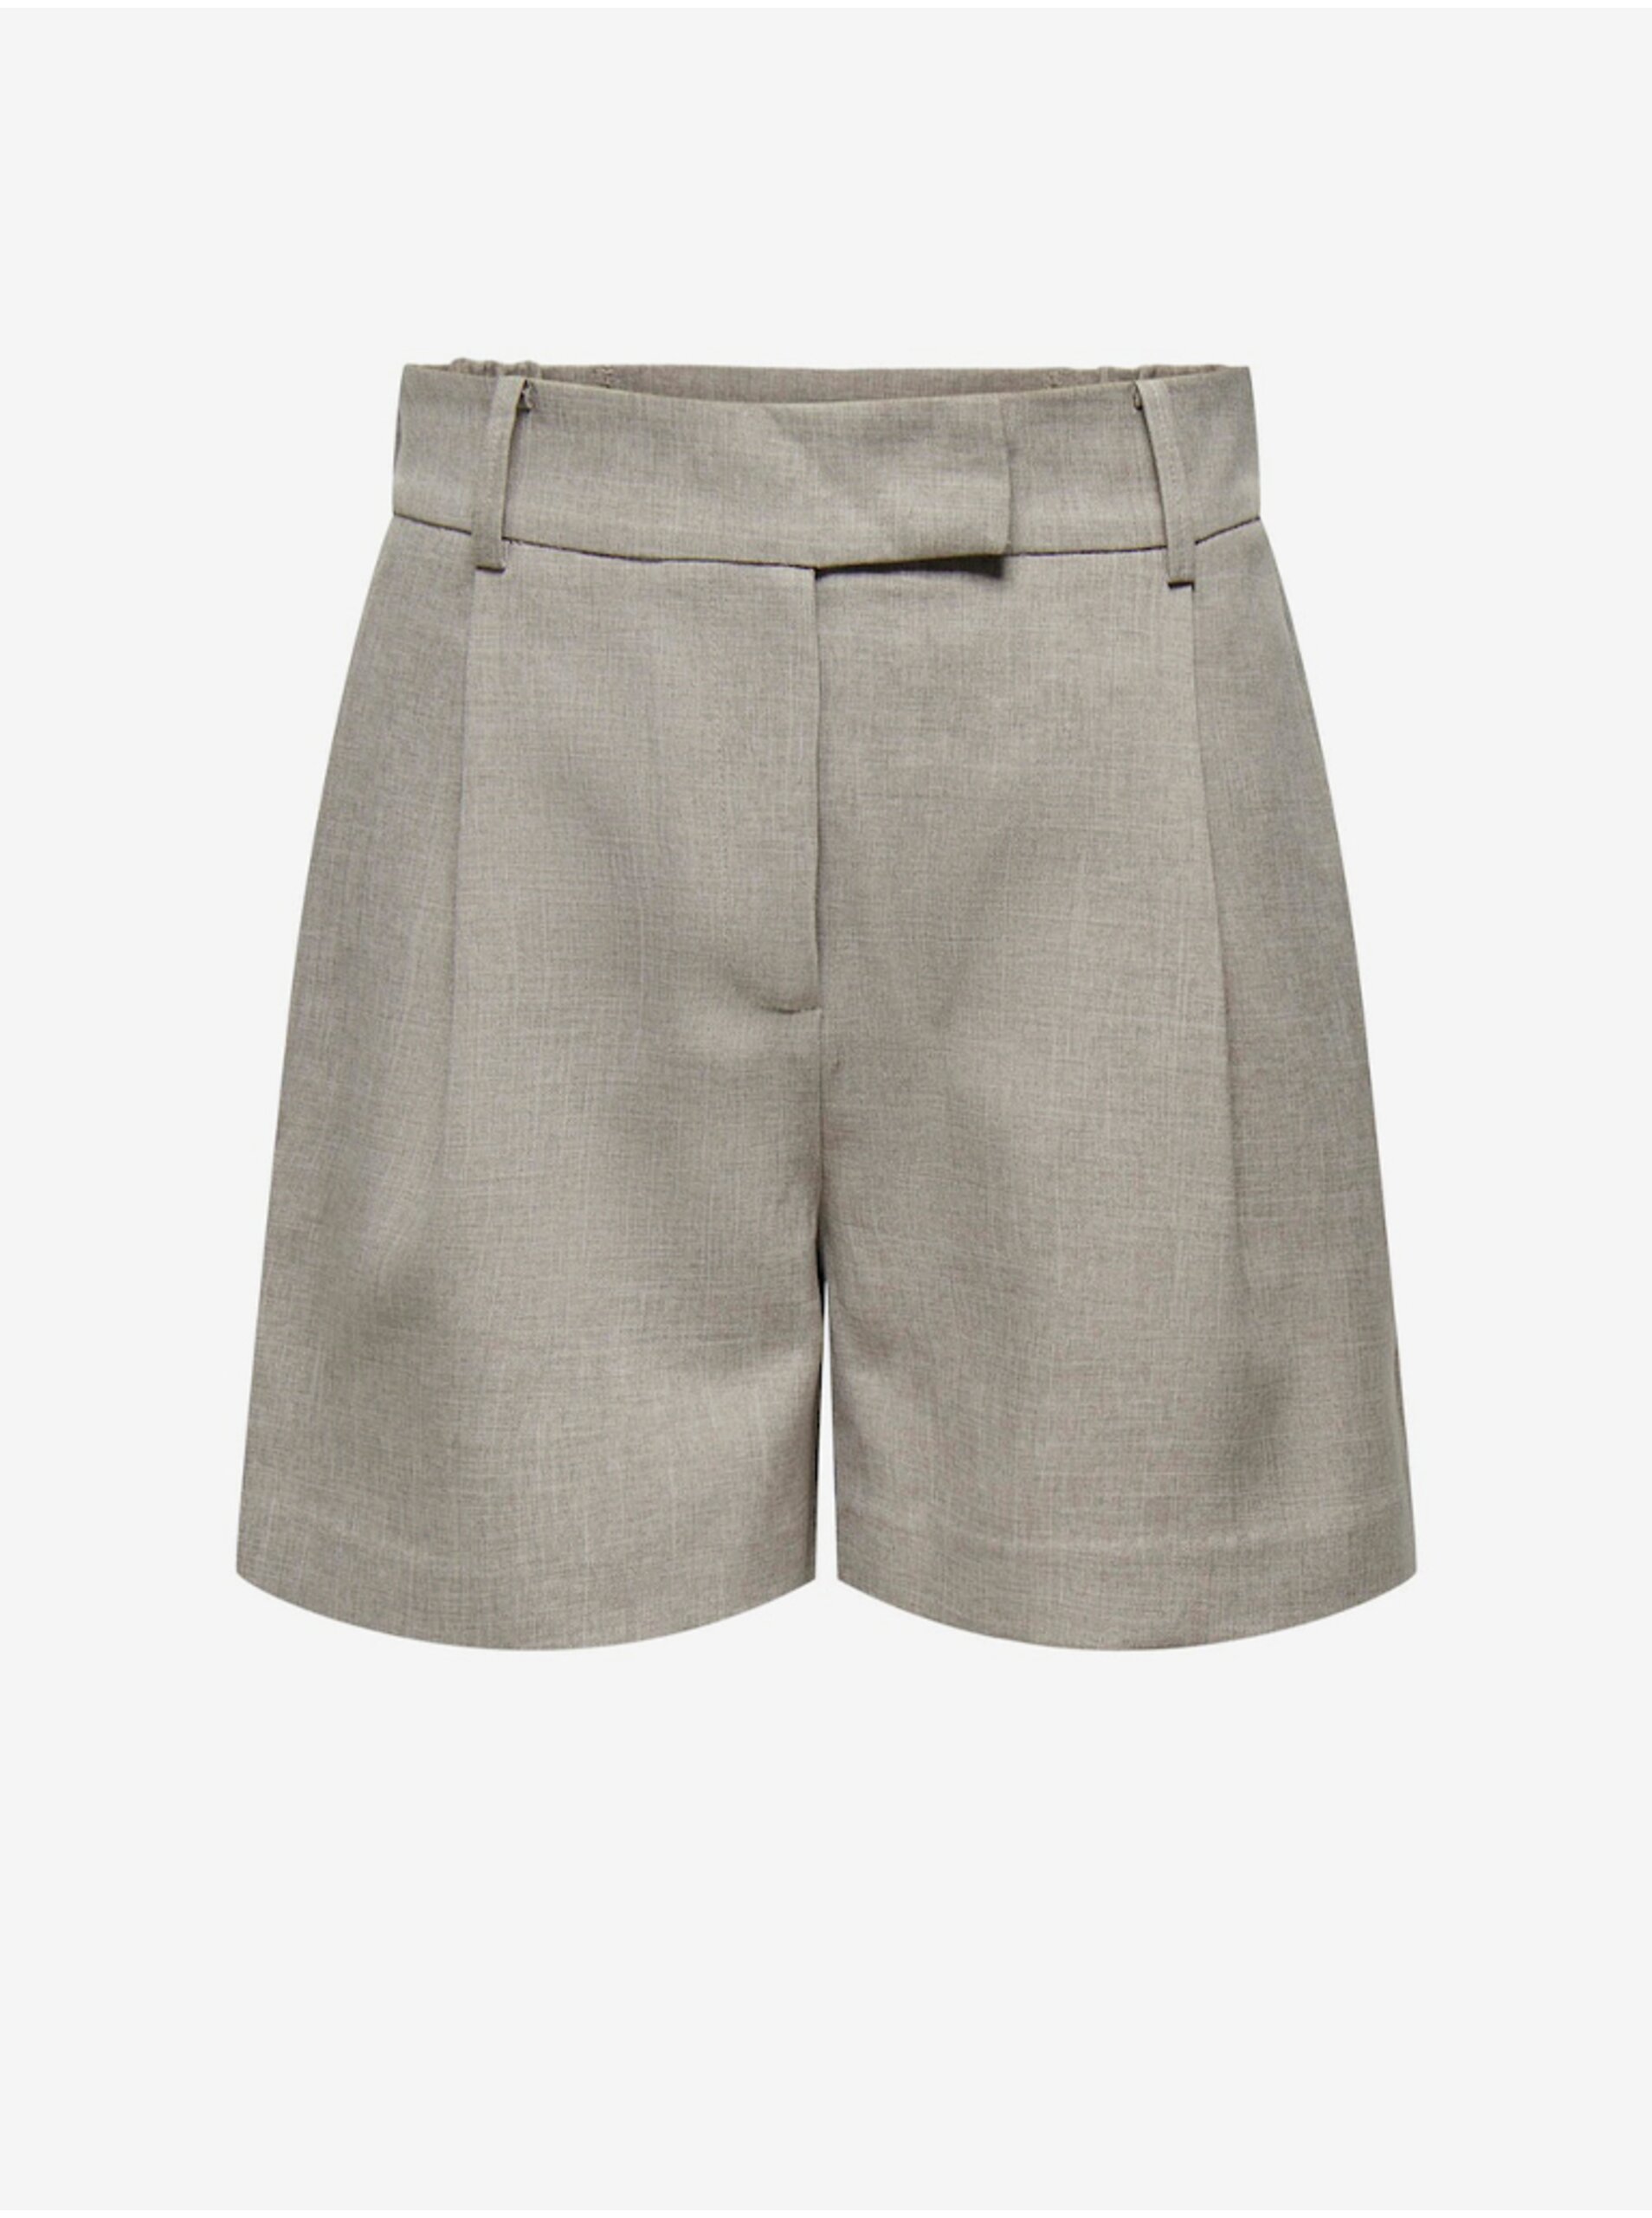 Women's grey shorts ONLY Linda - Women